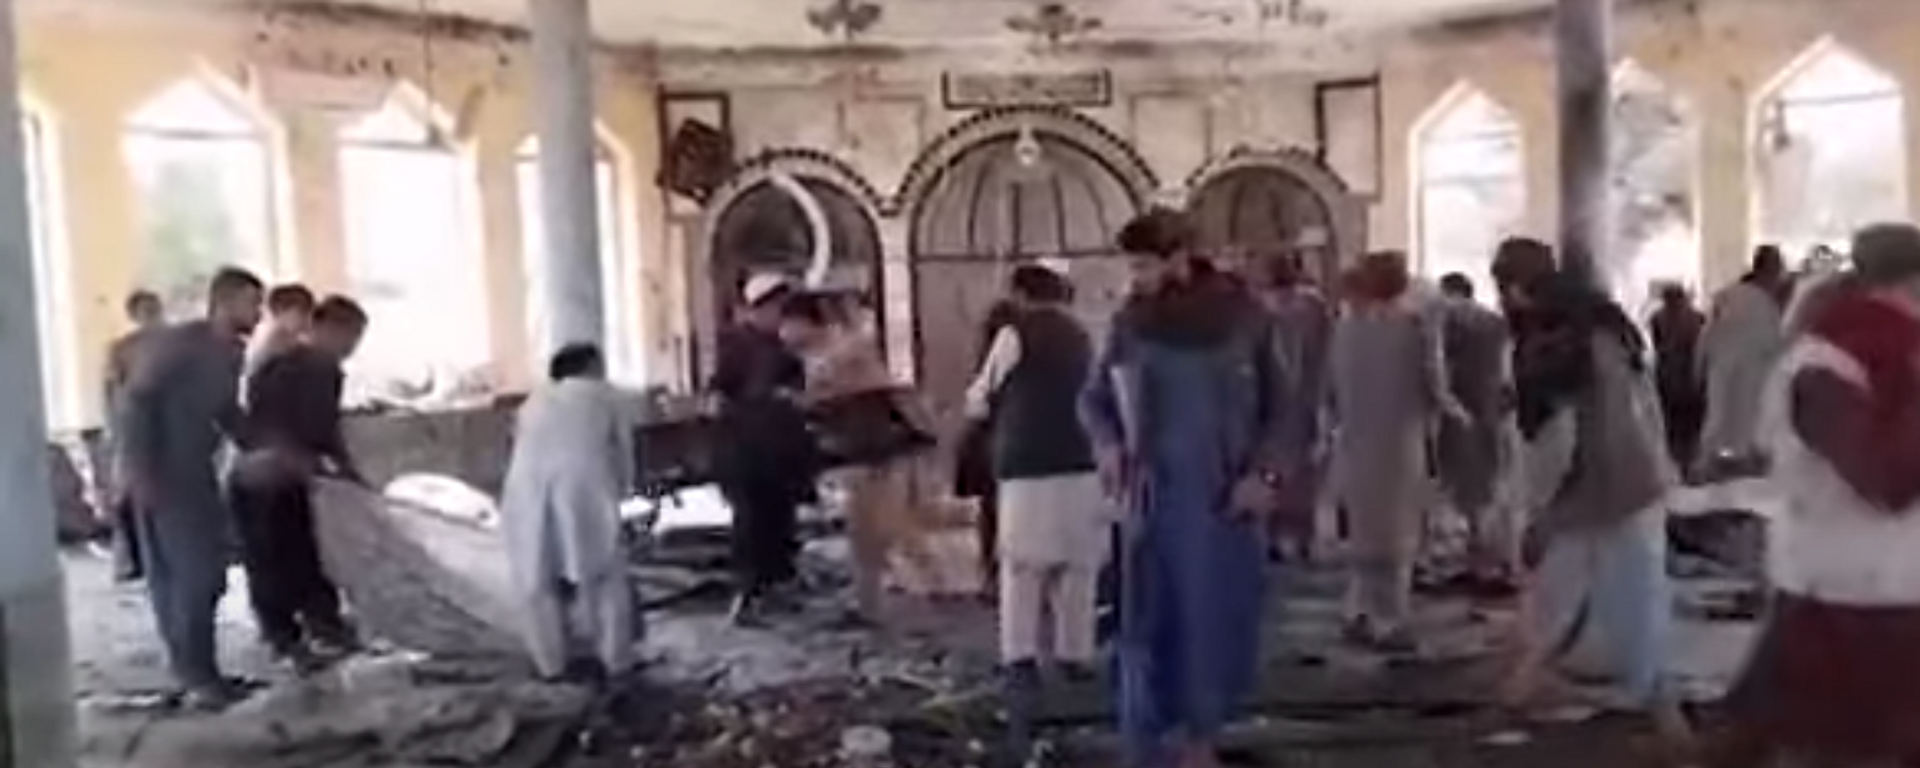 Разрушительные последствия взрыва в мечети Афганистана - Sputnik Абхазия, 1920, 08.10.2021